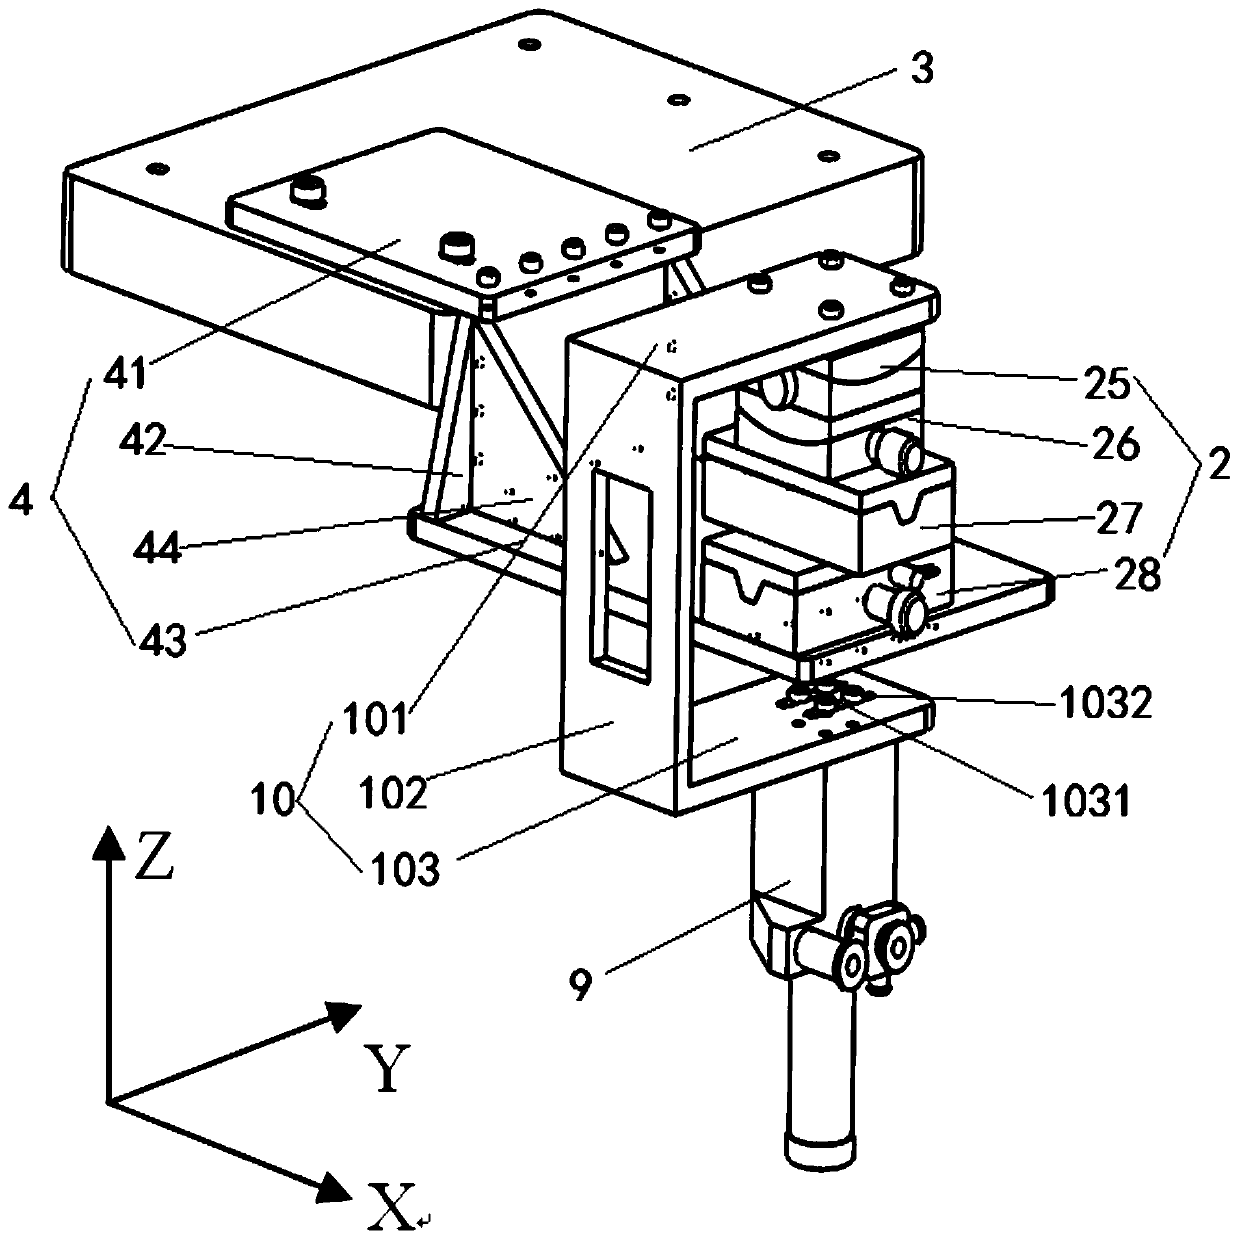 Adjusting device for optical centering instrument